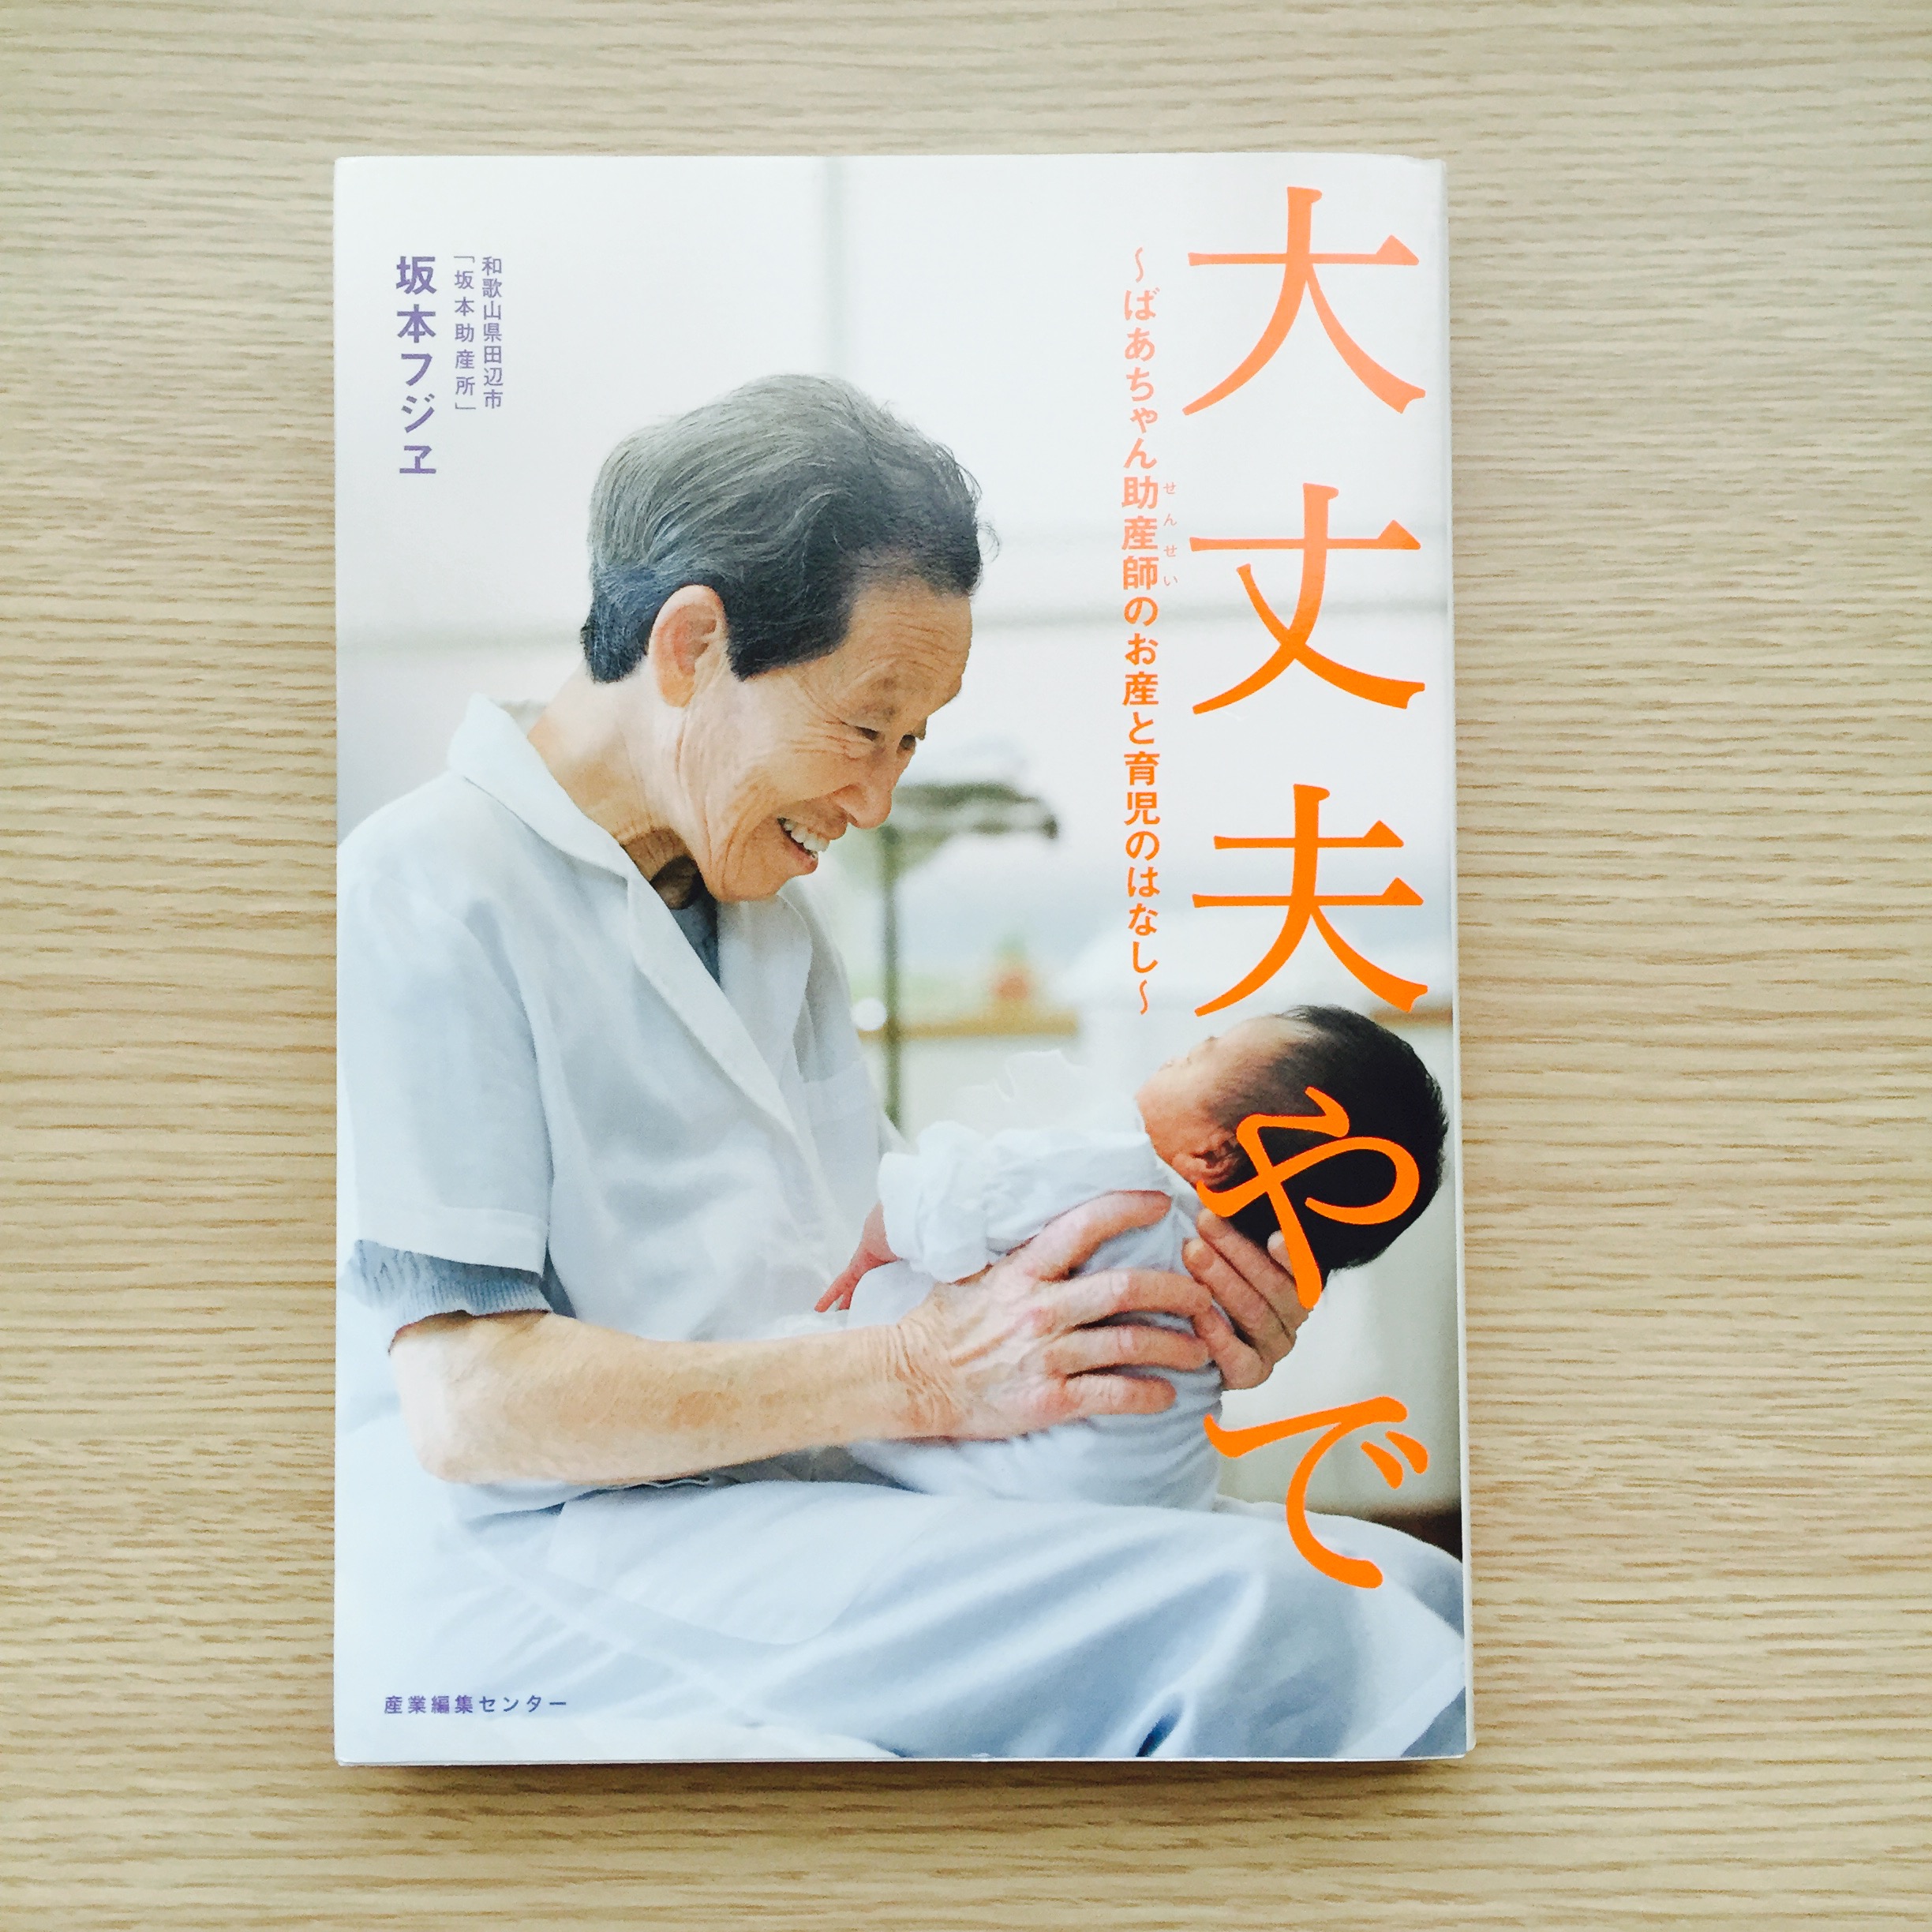 出産前の不安を取り除いてくれた1冊。日本最高齢の現役助産師、坂本フジヱさんの著書「大丈夫やで」